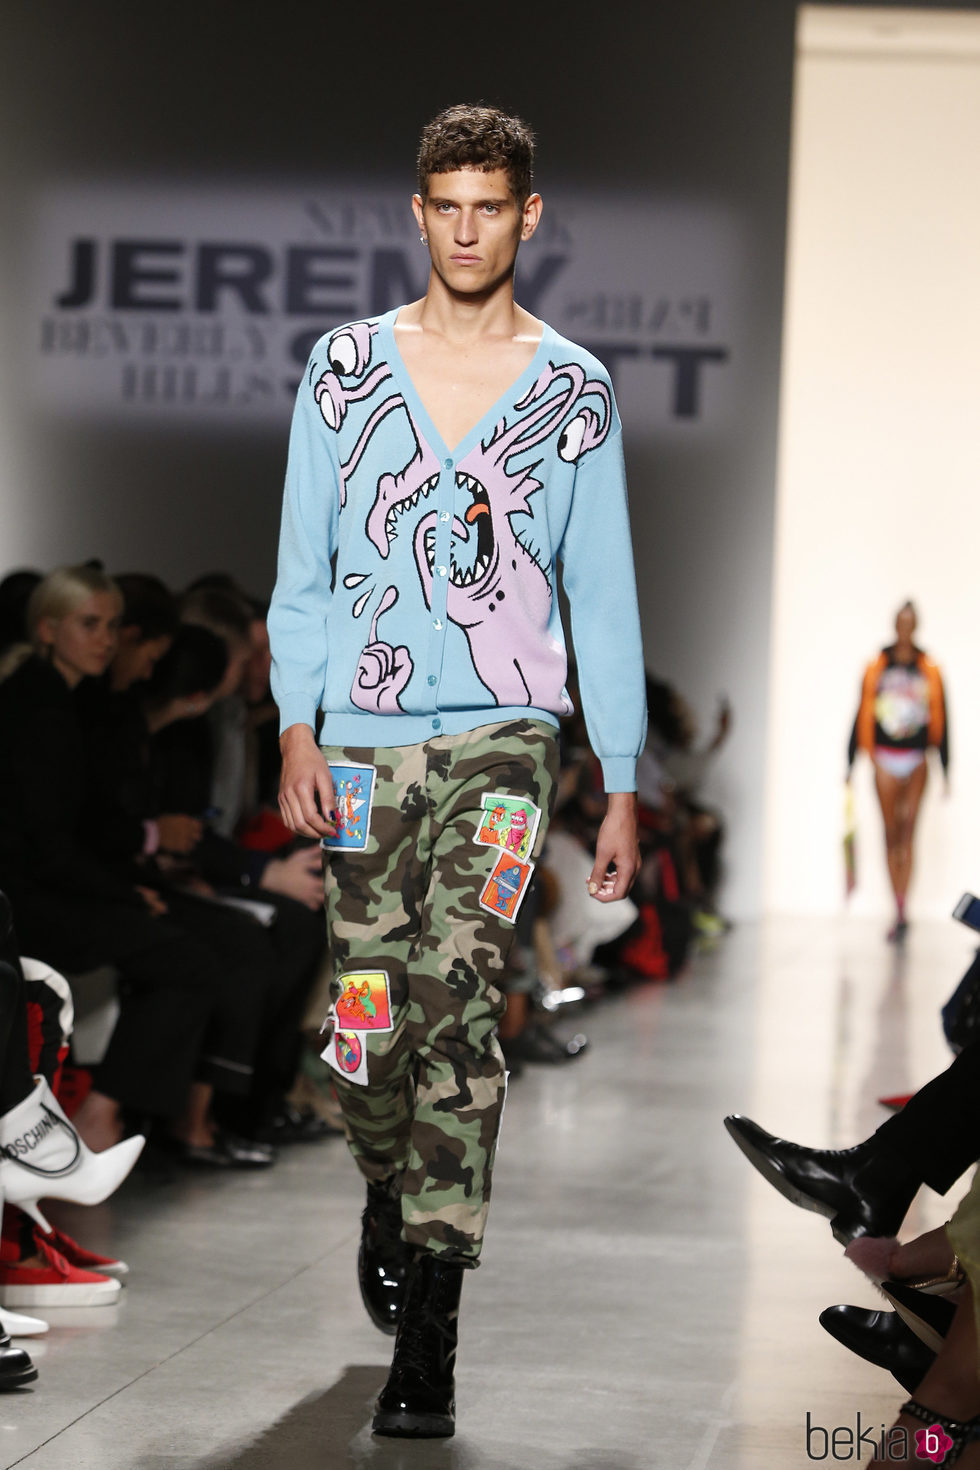 Chaqueta azul y pantalón militar masculino de Jeremy Scott de la colección primavera/verano 2018 para Nueva York Fashion Week